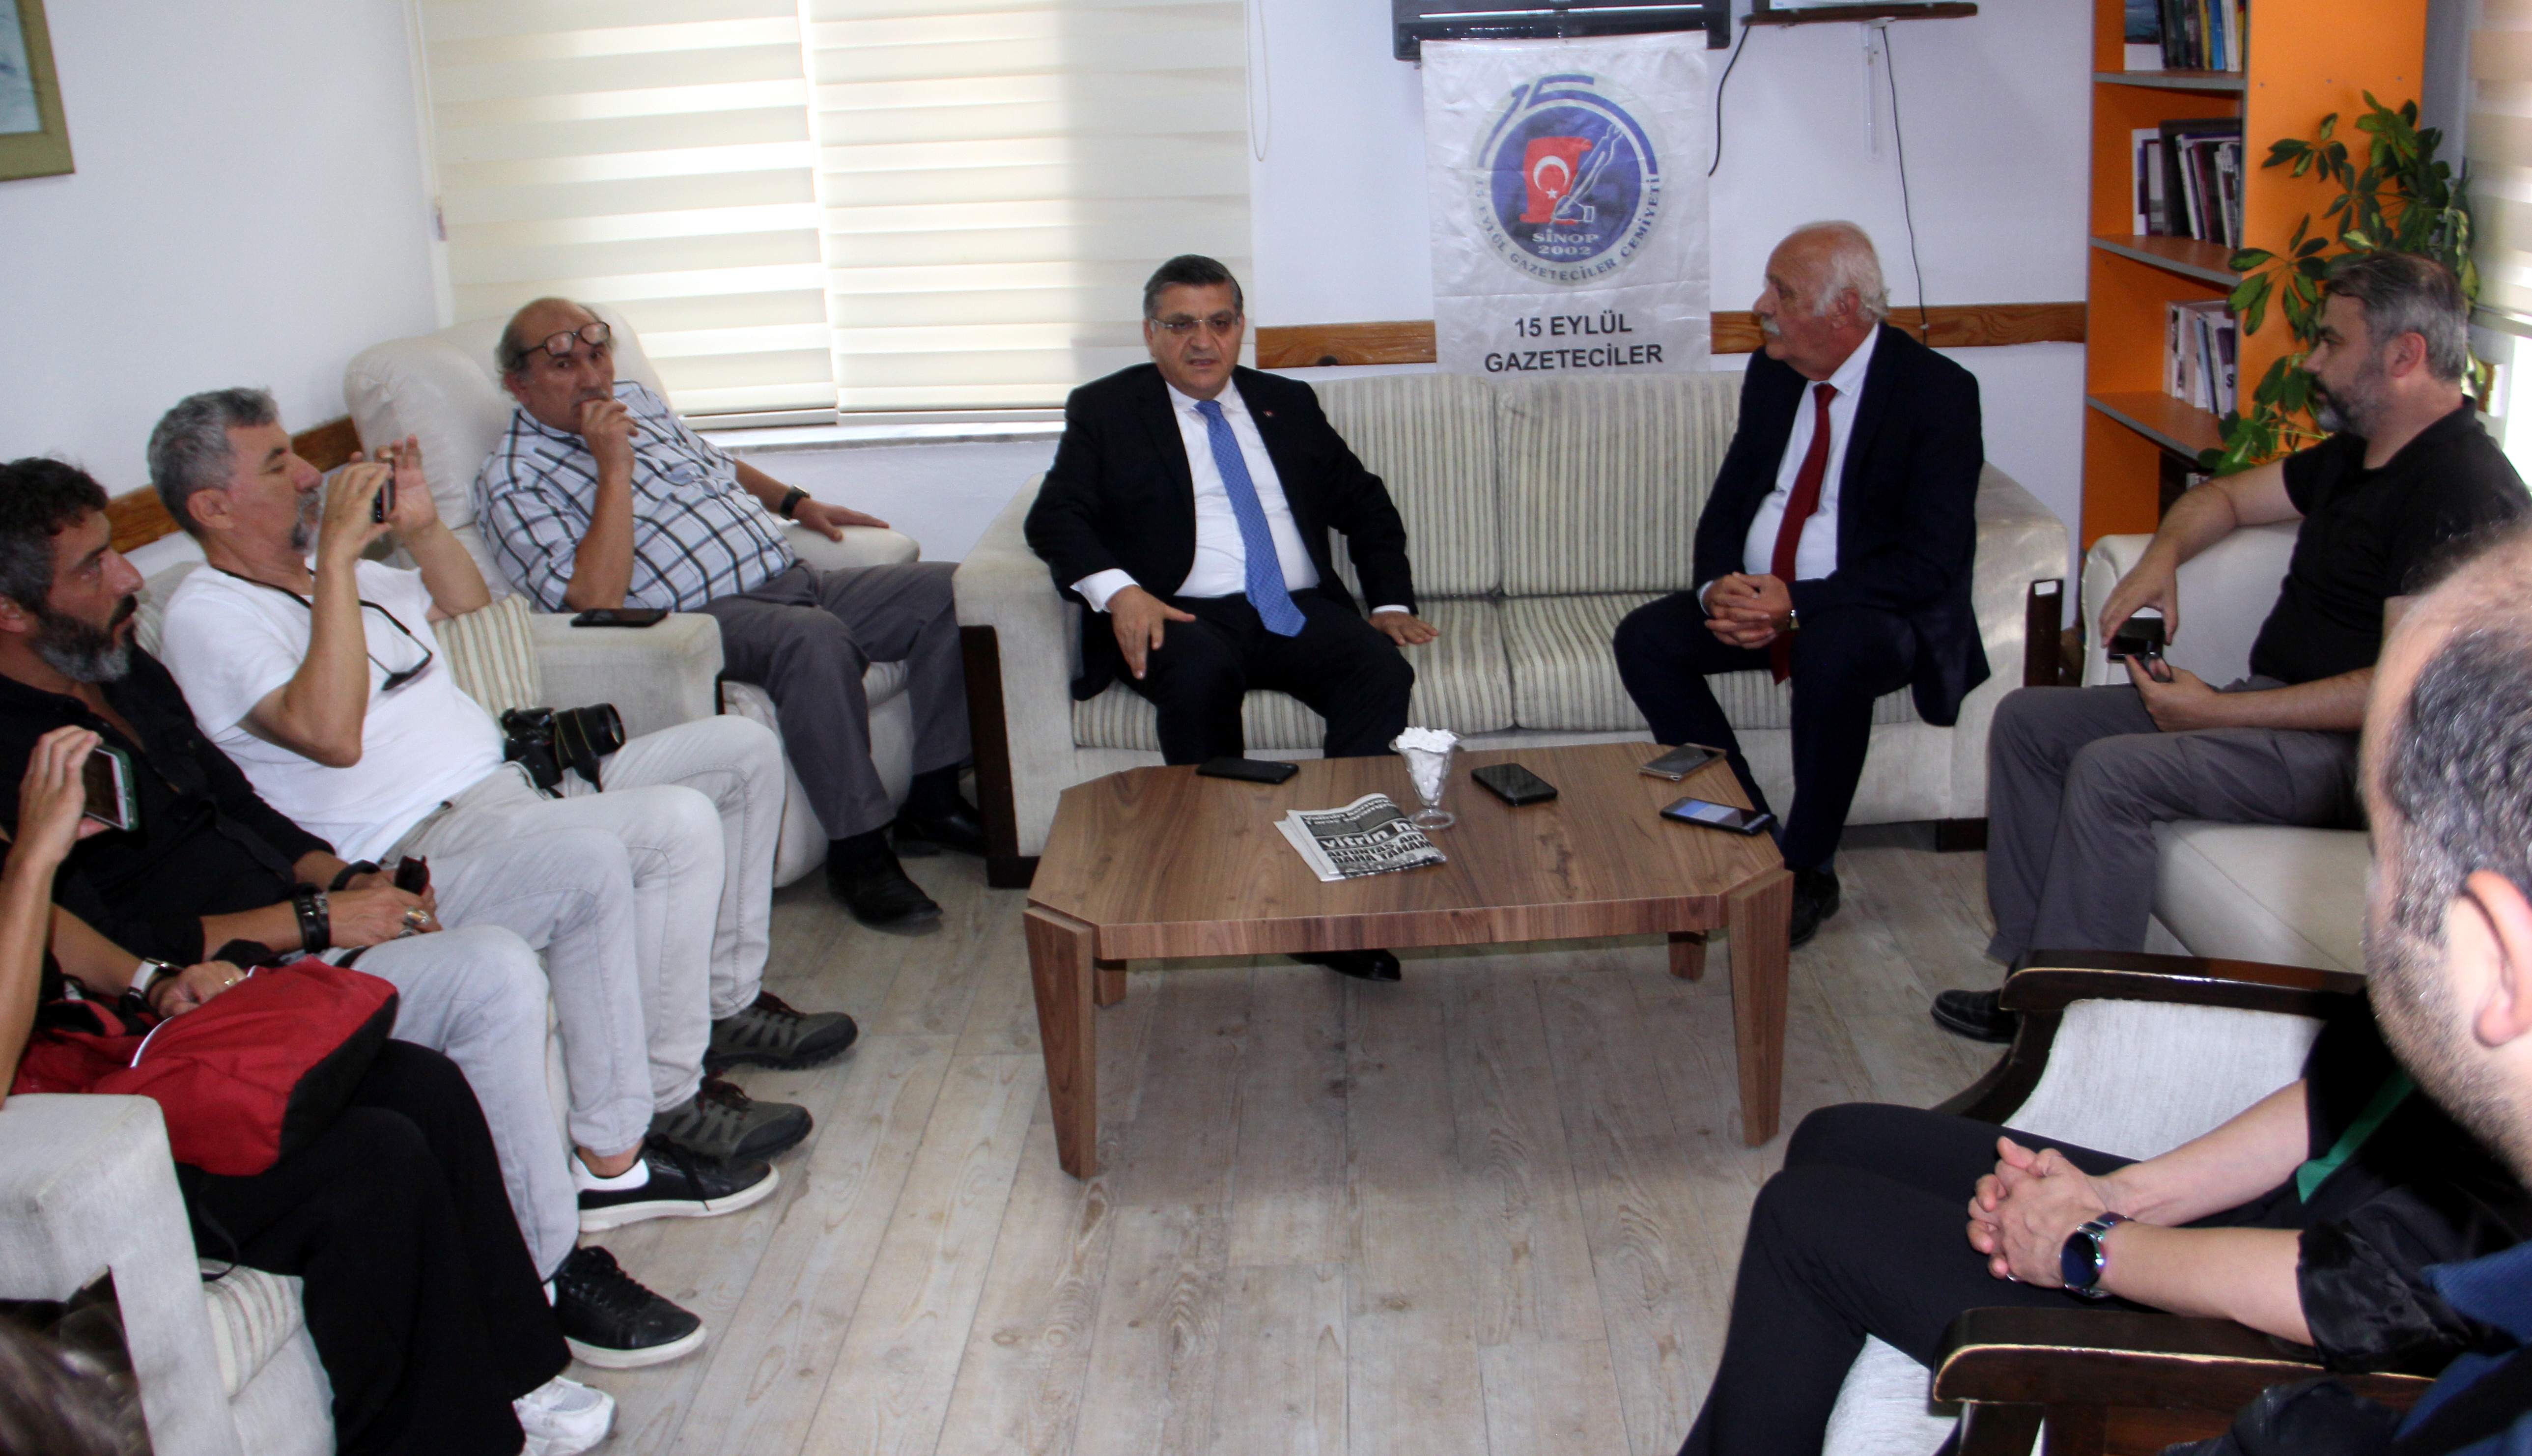 Vali Özarslan’dan, Sinop 15 Eylül Gazeteciler Cemiyetine ziyaret